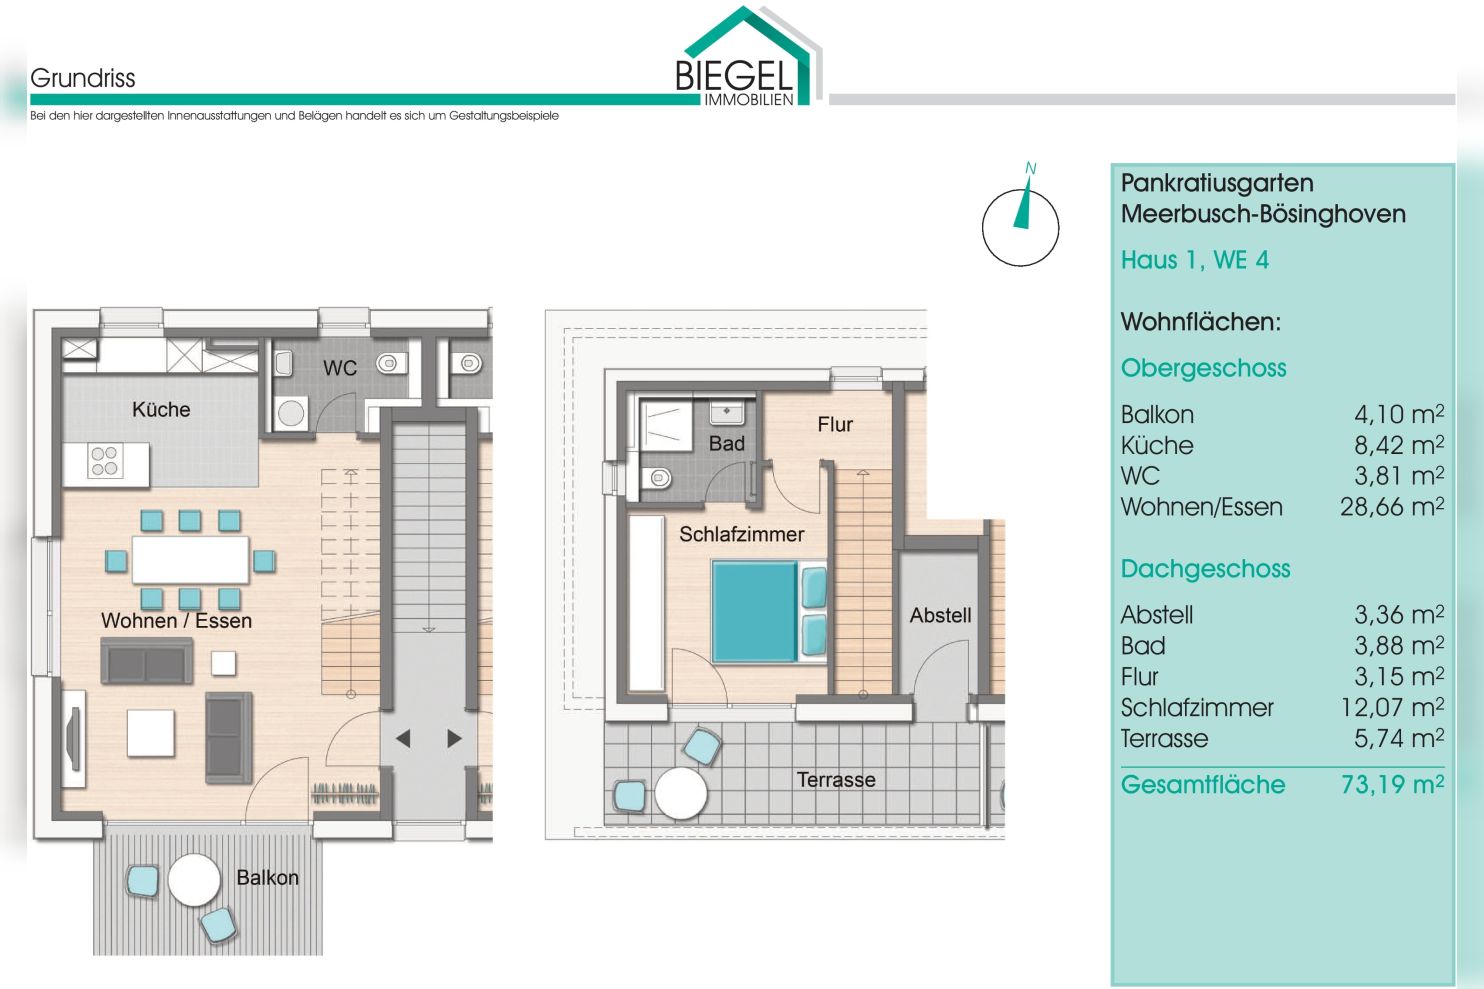 Immobilie Nr.BÖ-01.4 - BÖ-01.4;  2-Raum-Maisonettewohnung über OG und DG - Bild 15.jpg